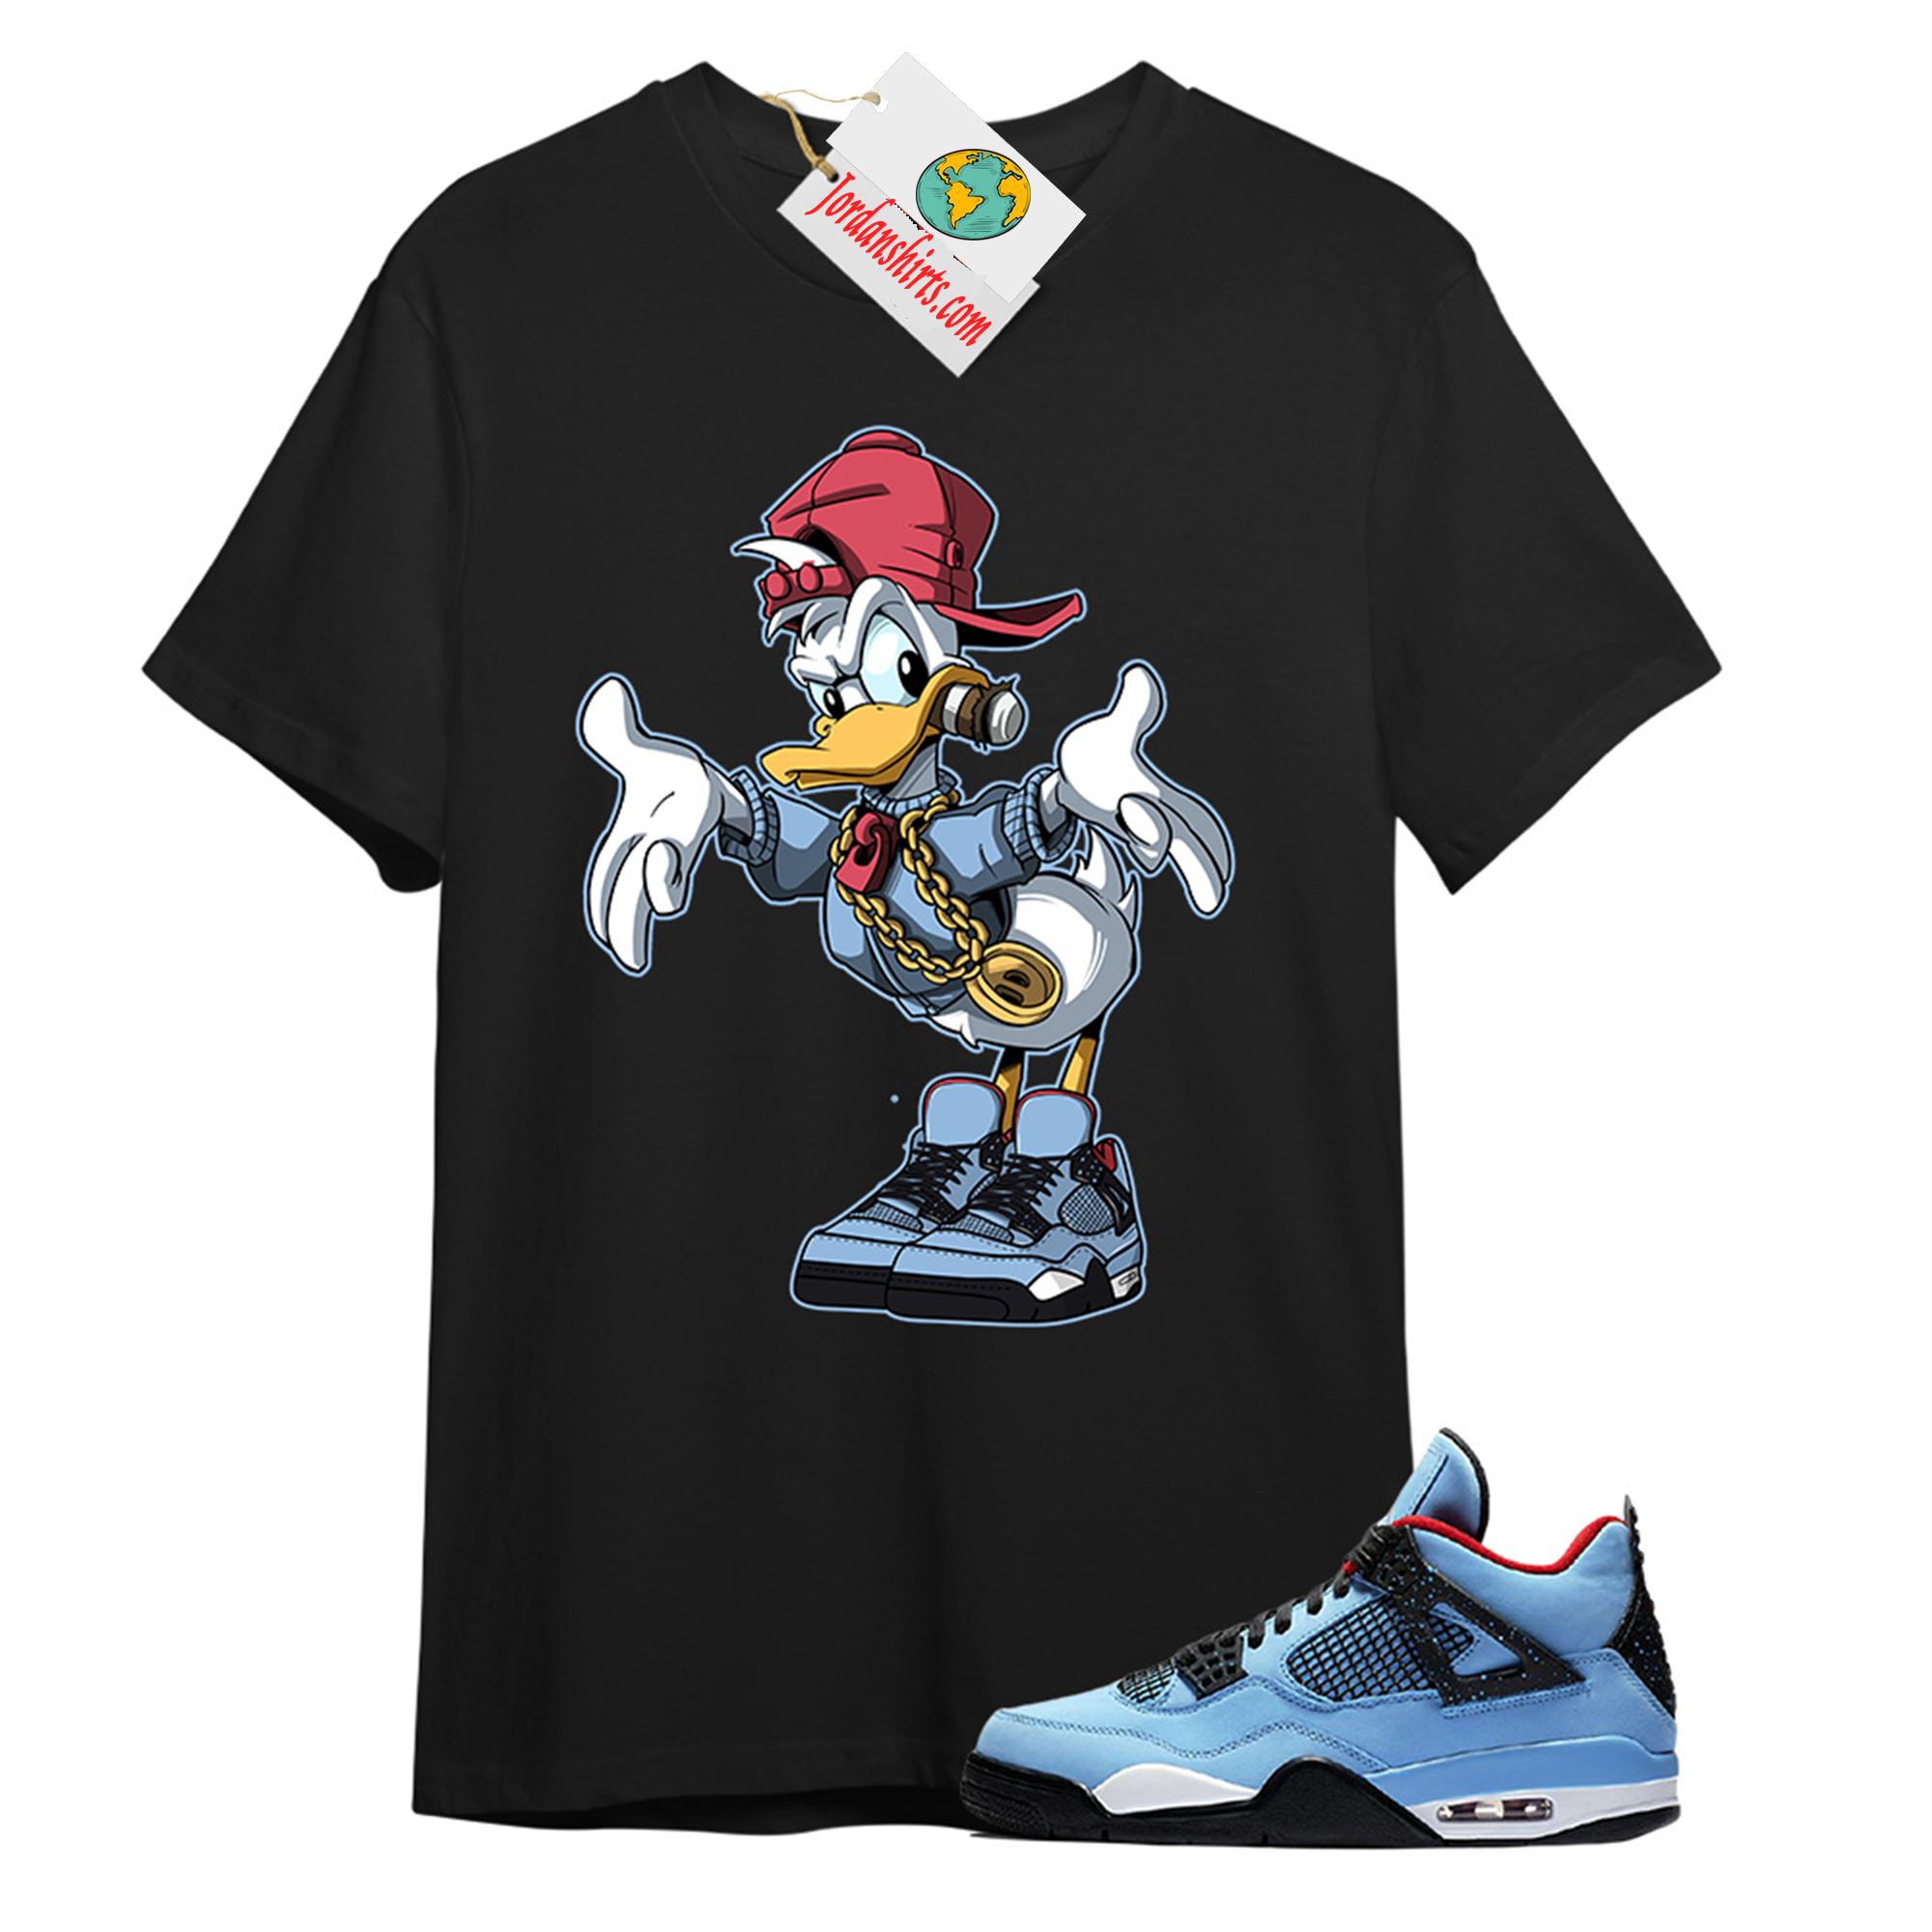 Jordan 4 Shirt, Donald Duck Black T-shirt Air Jordan 4 Cactus Jack 4s Plus Size Up To 5xl